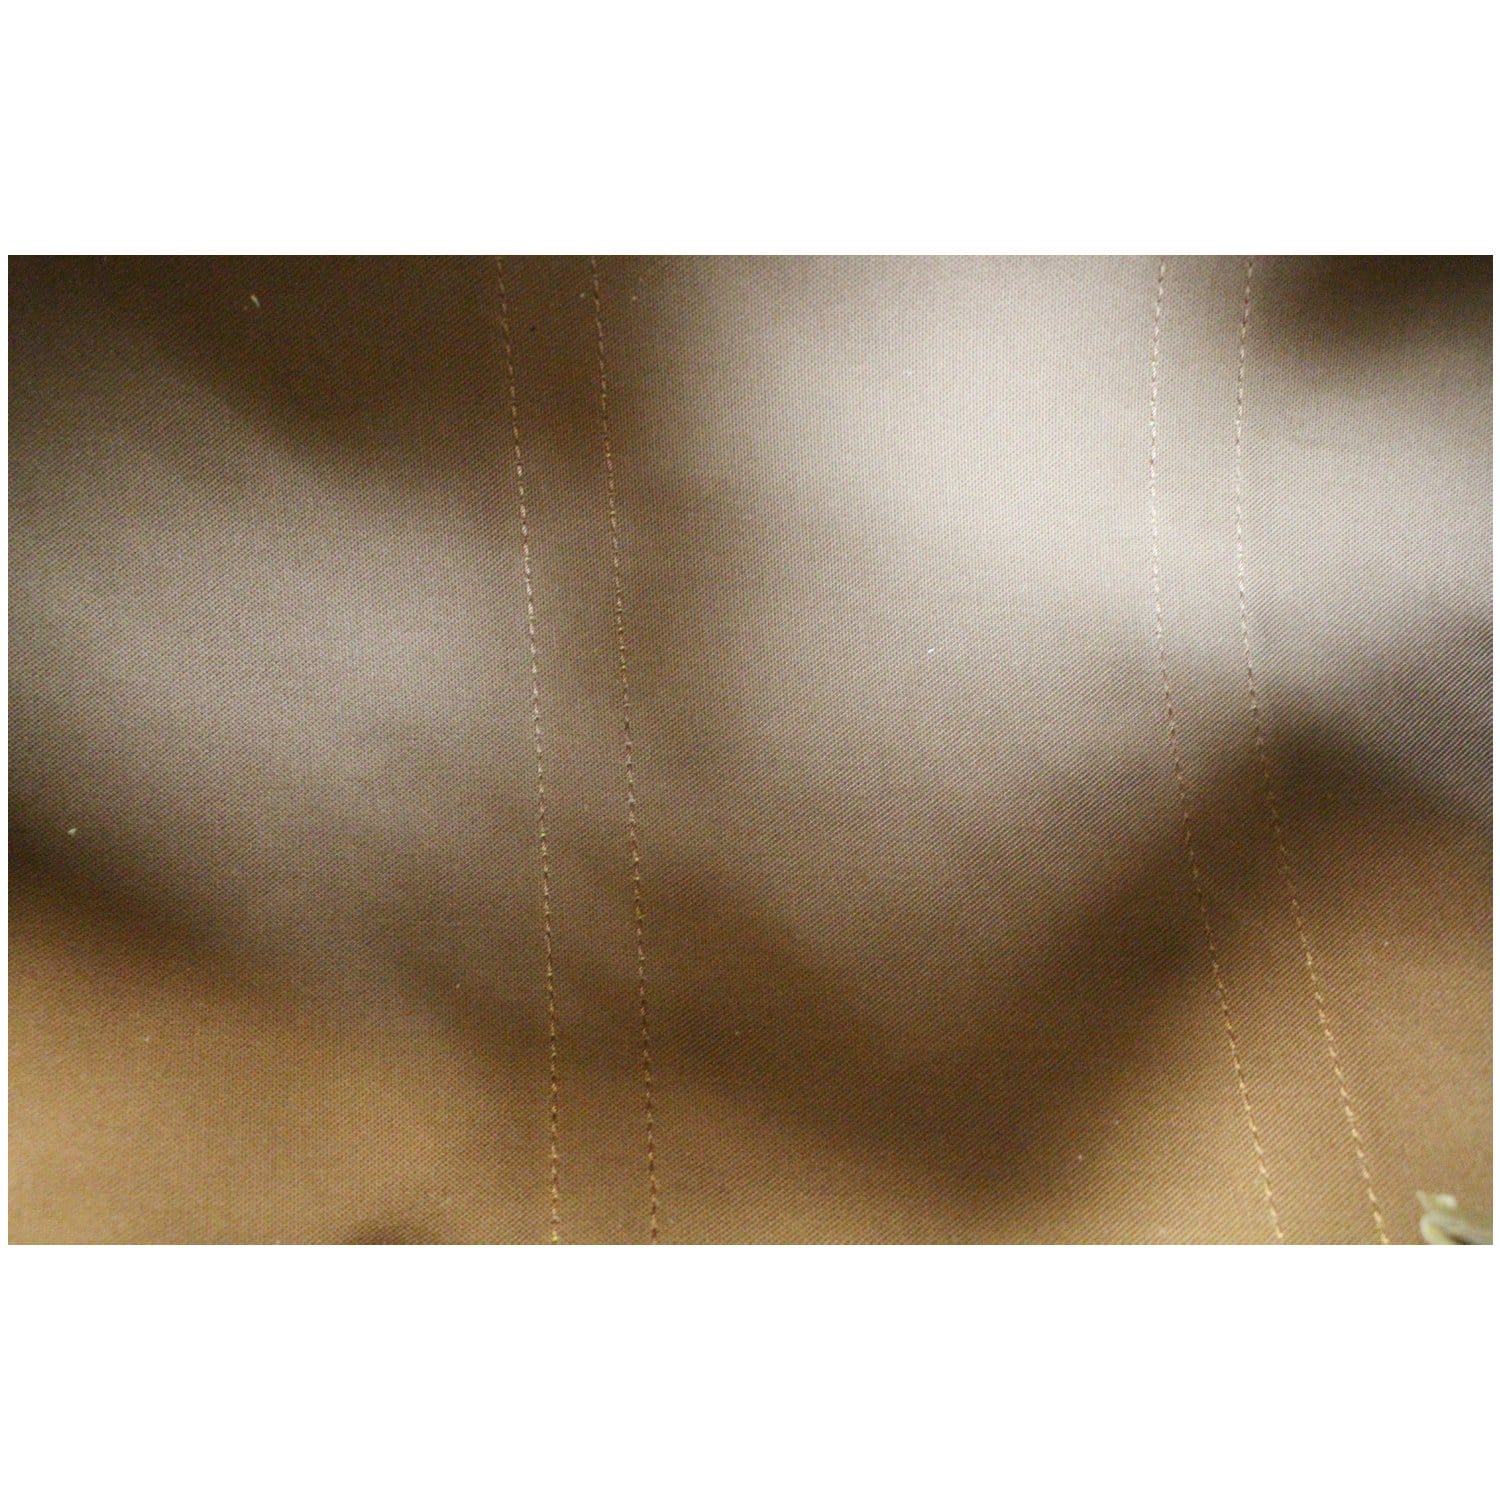 Keepall cloth travel bag Louis Vuitton Brown in Cloth - 34788949